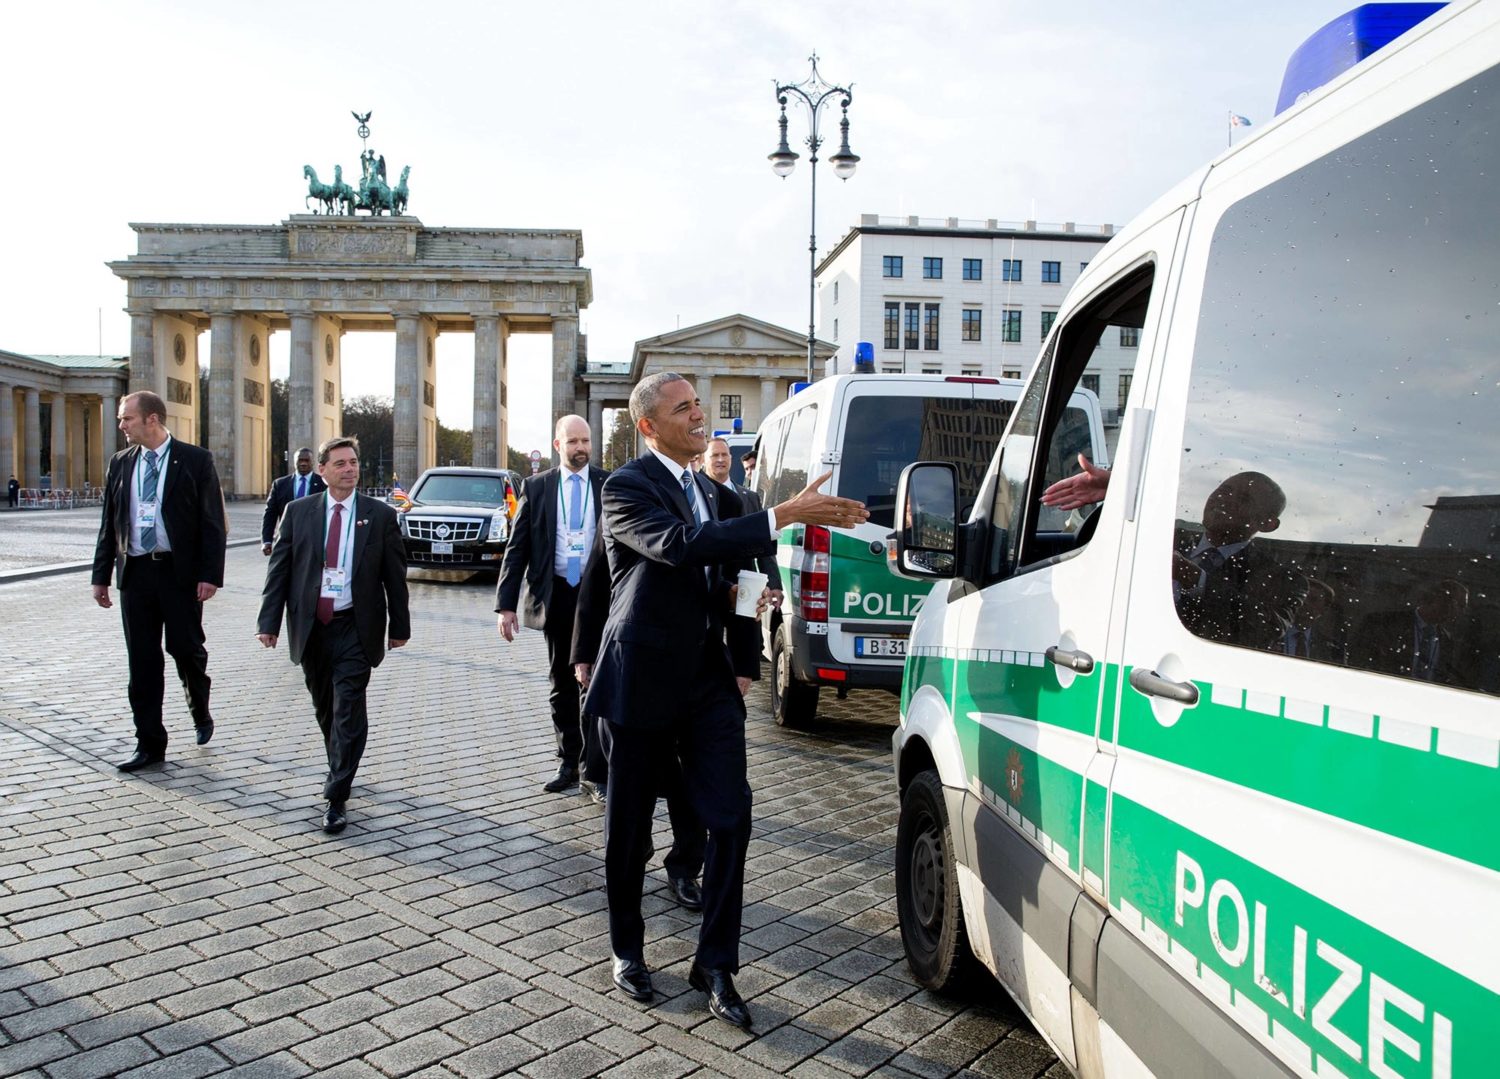 US-Präsident Obama am Pariser Platz, wo sich die amerikanische Botschaft in Berlin befindet. Foto: Imago Images/ZUMA Press